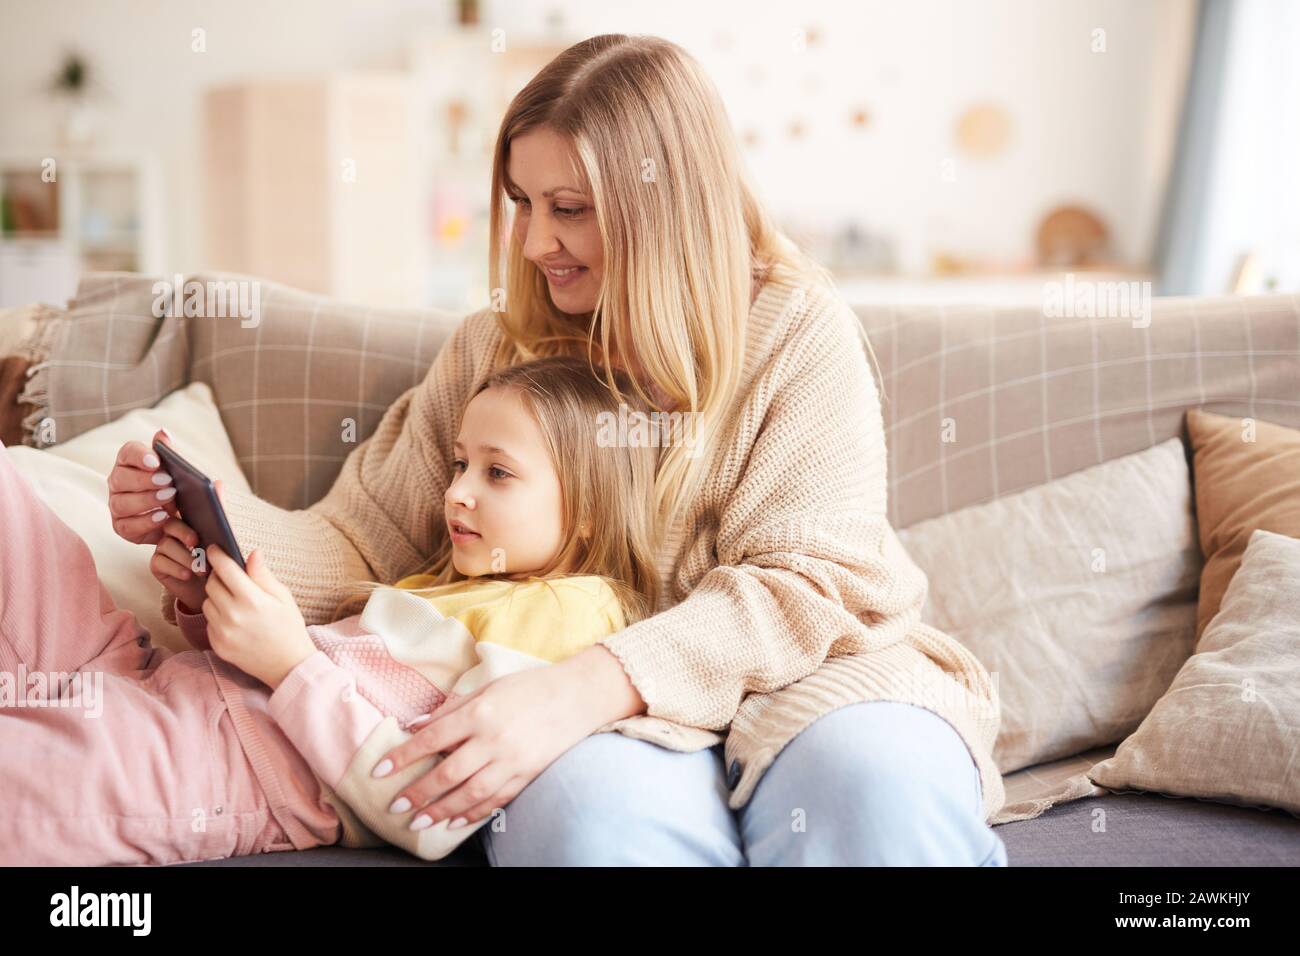 Warmes Porträt der modernen Mutter, die mit niedlichem Mädchen spielt, während sie die Zeit auf der Couch genießen und digitale Tablette und Kopierer verwenden Stockfoto